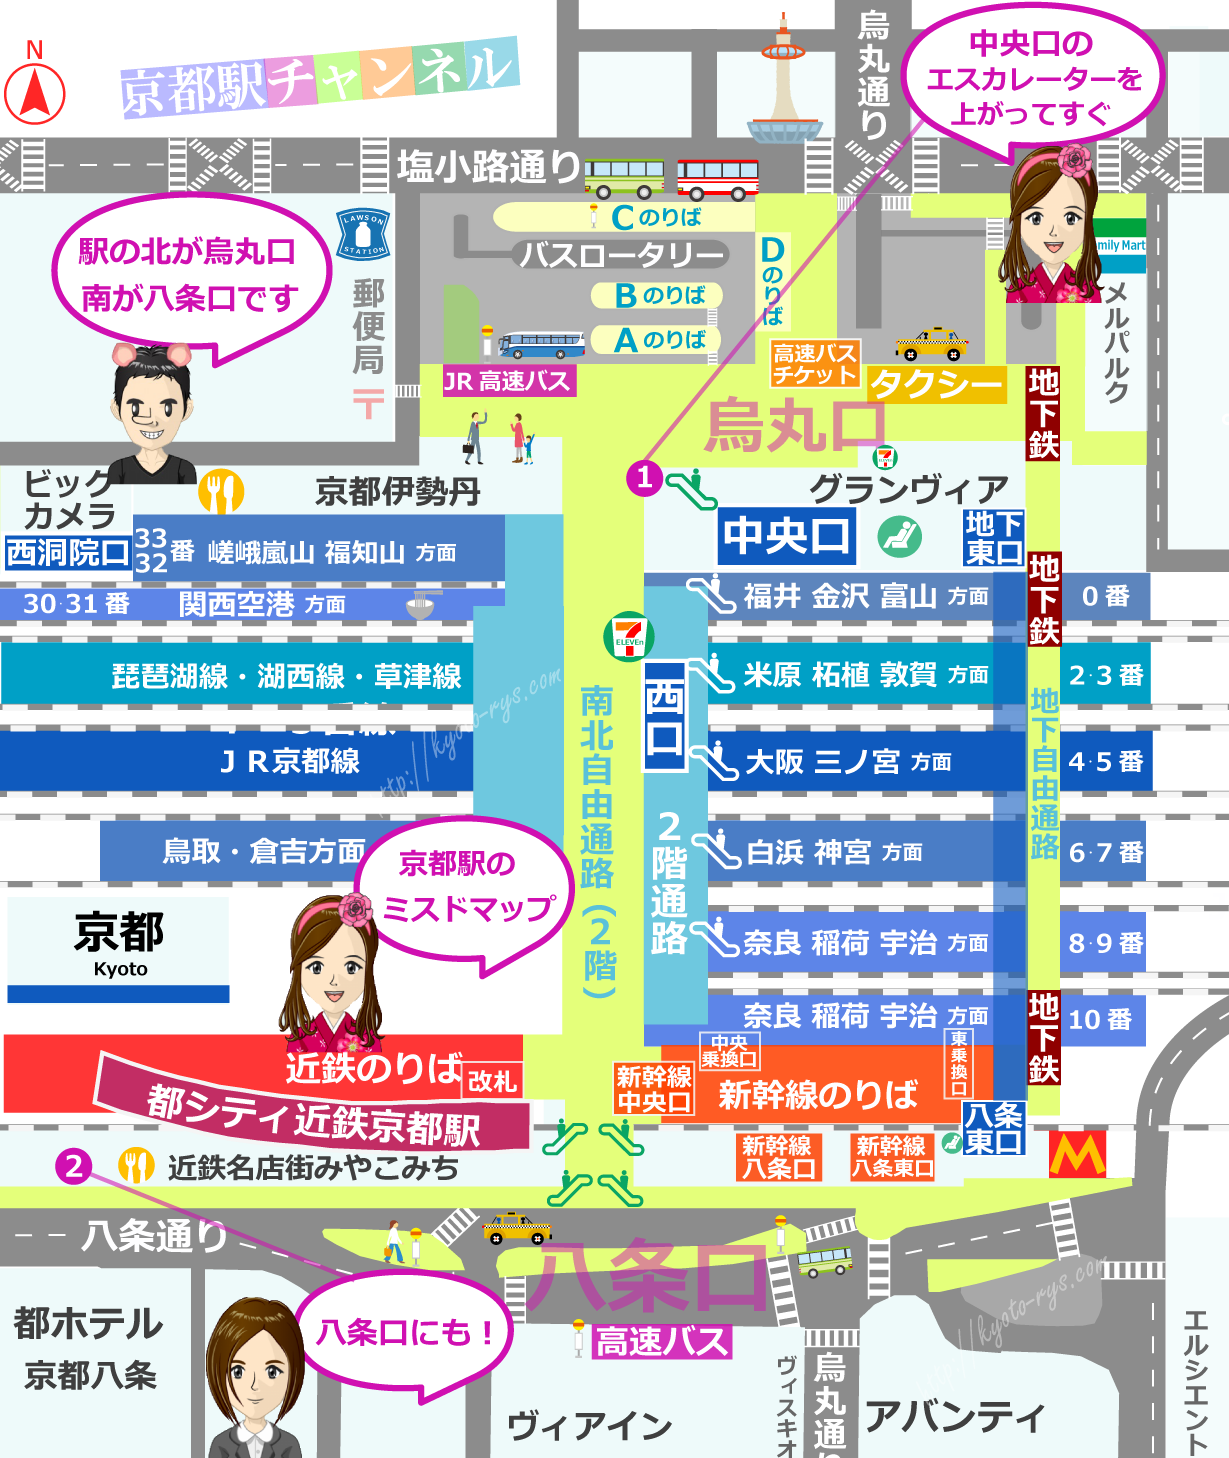 京都駅の地図とミスタードーナツの店舗